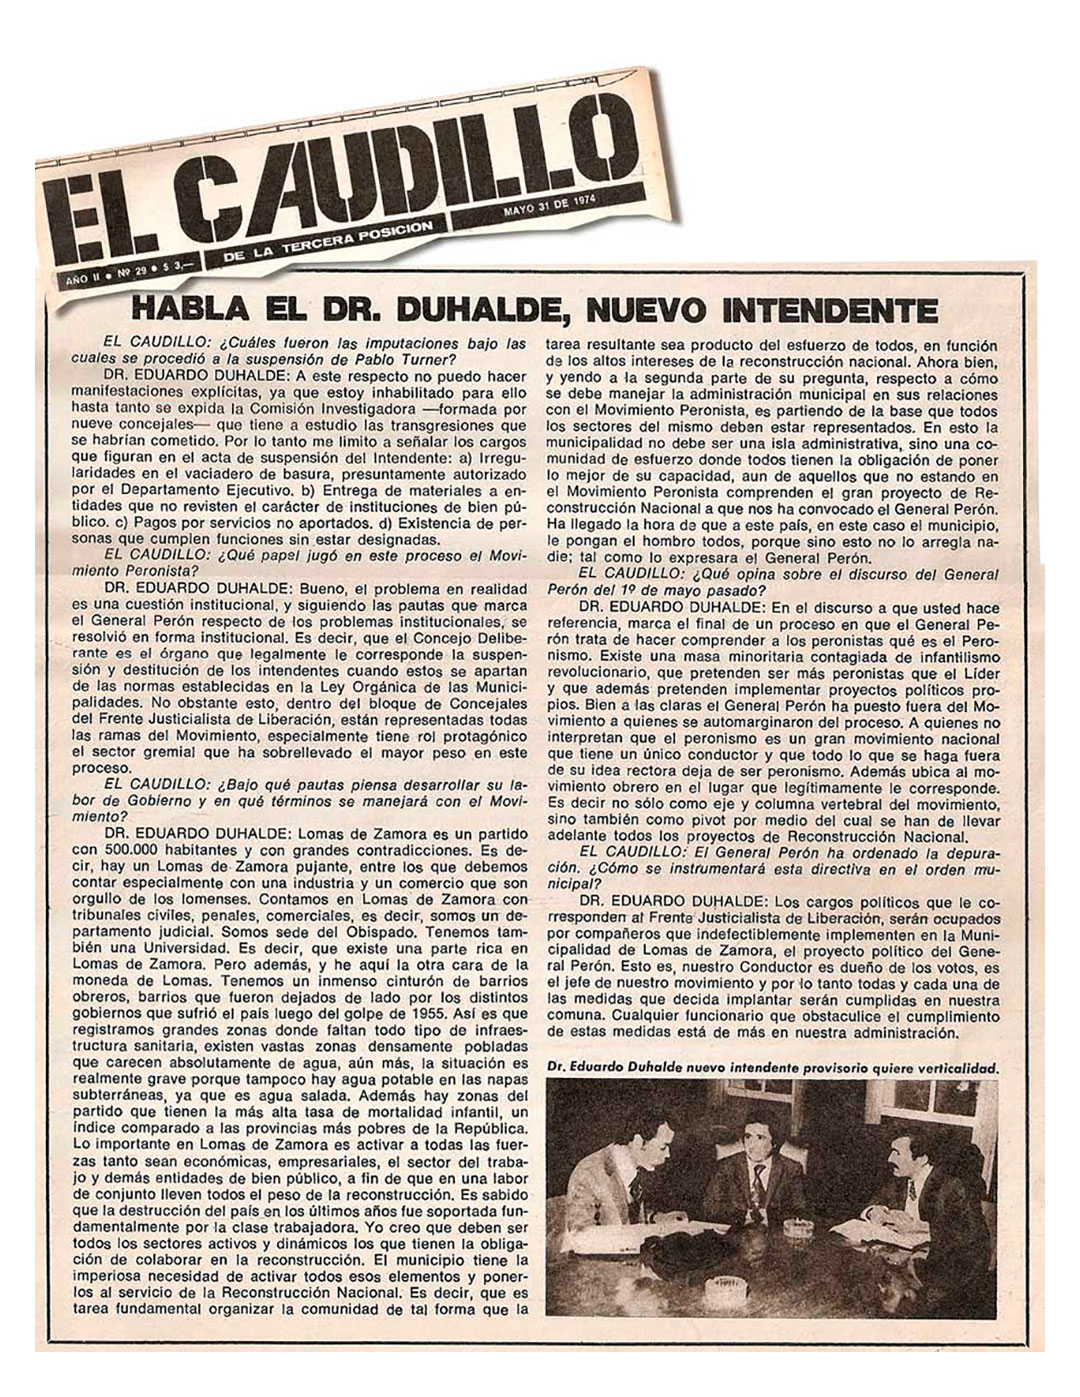 Entrevista a Eduardo Duhalde, el intendente de Lomas de Zamora en marzo de 1975